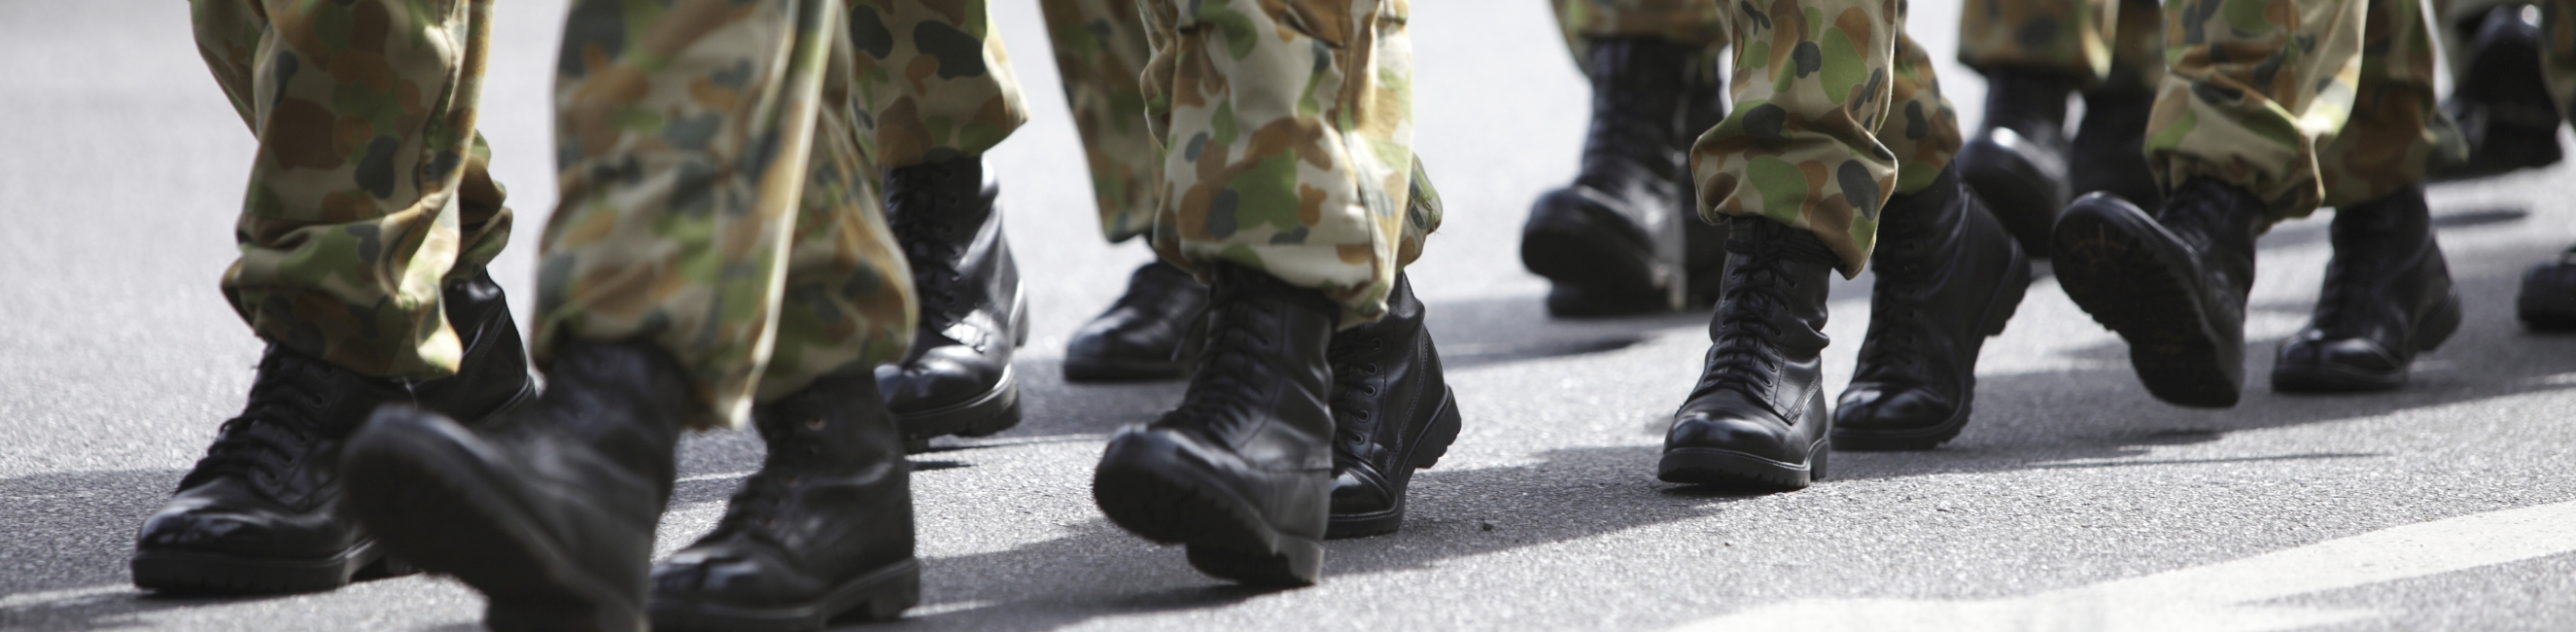 soldiers walking